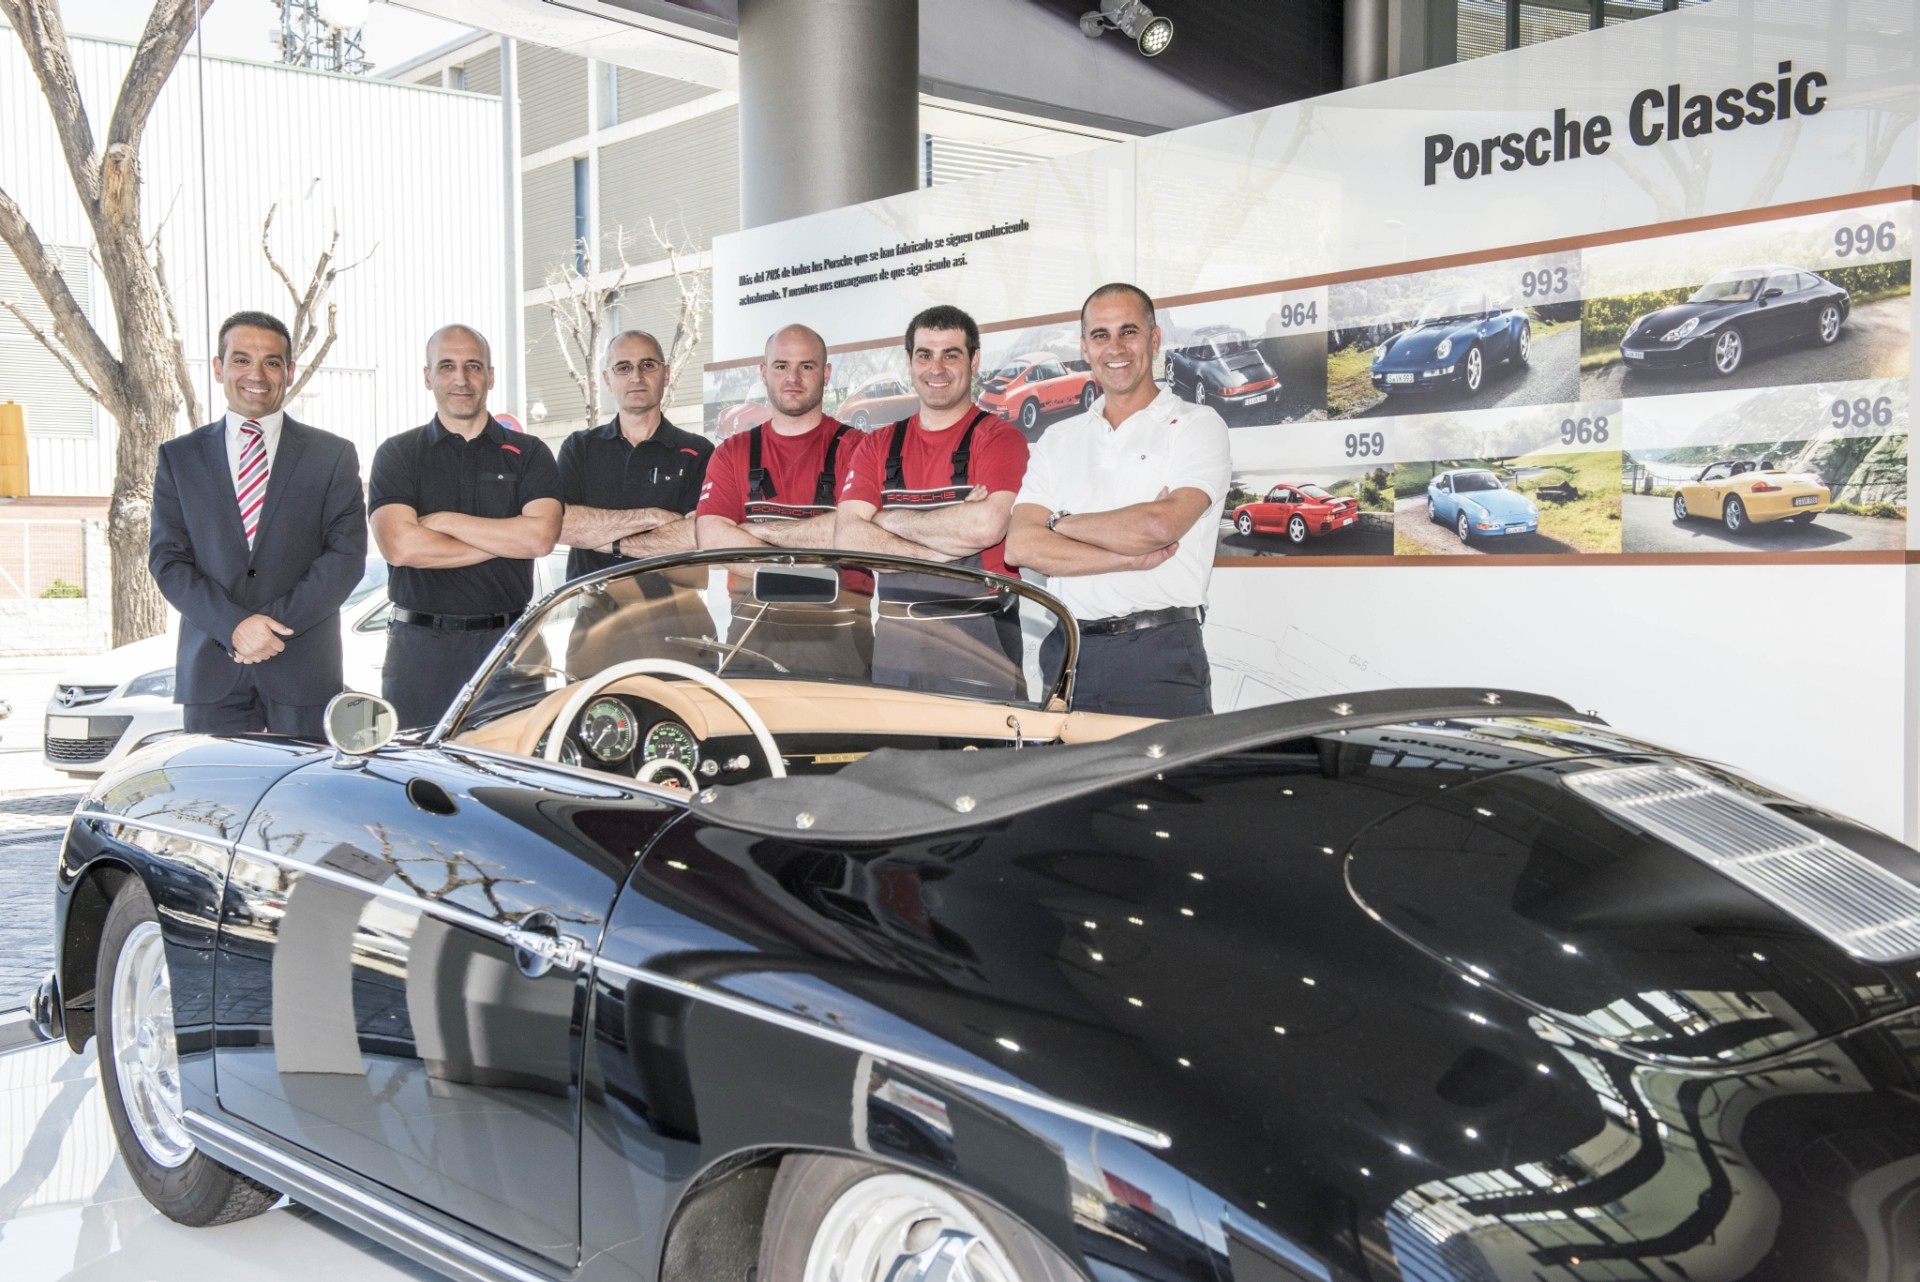 Si eres un fanático de los Porsche clásicos debes conocer el primer Porsche Classic Partner español